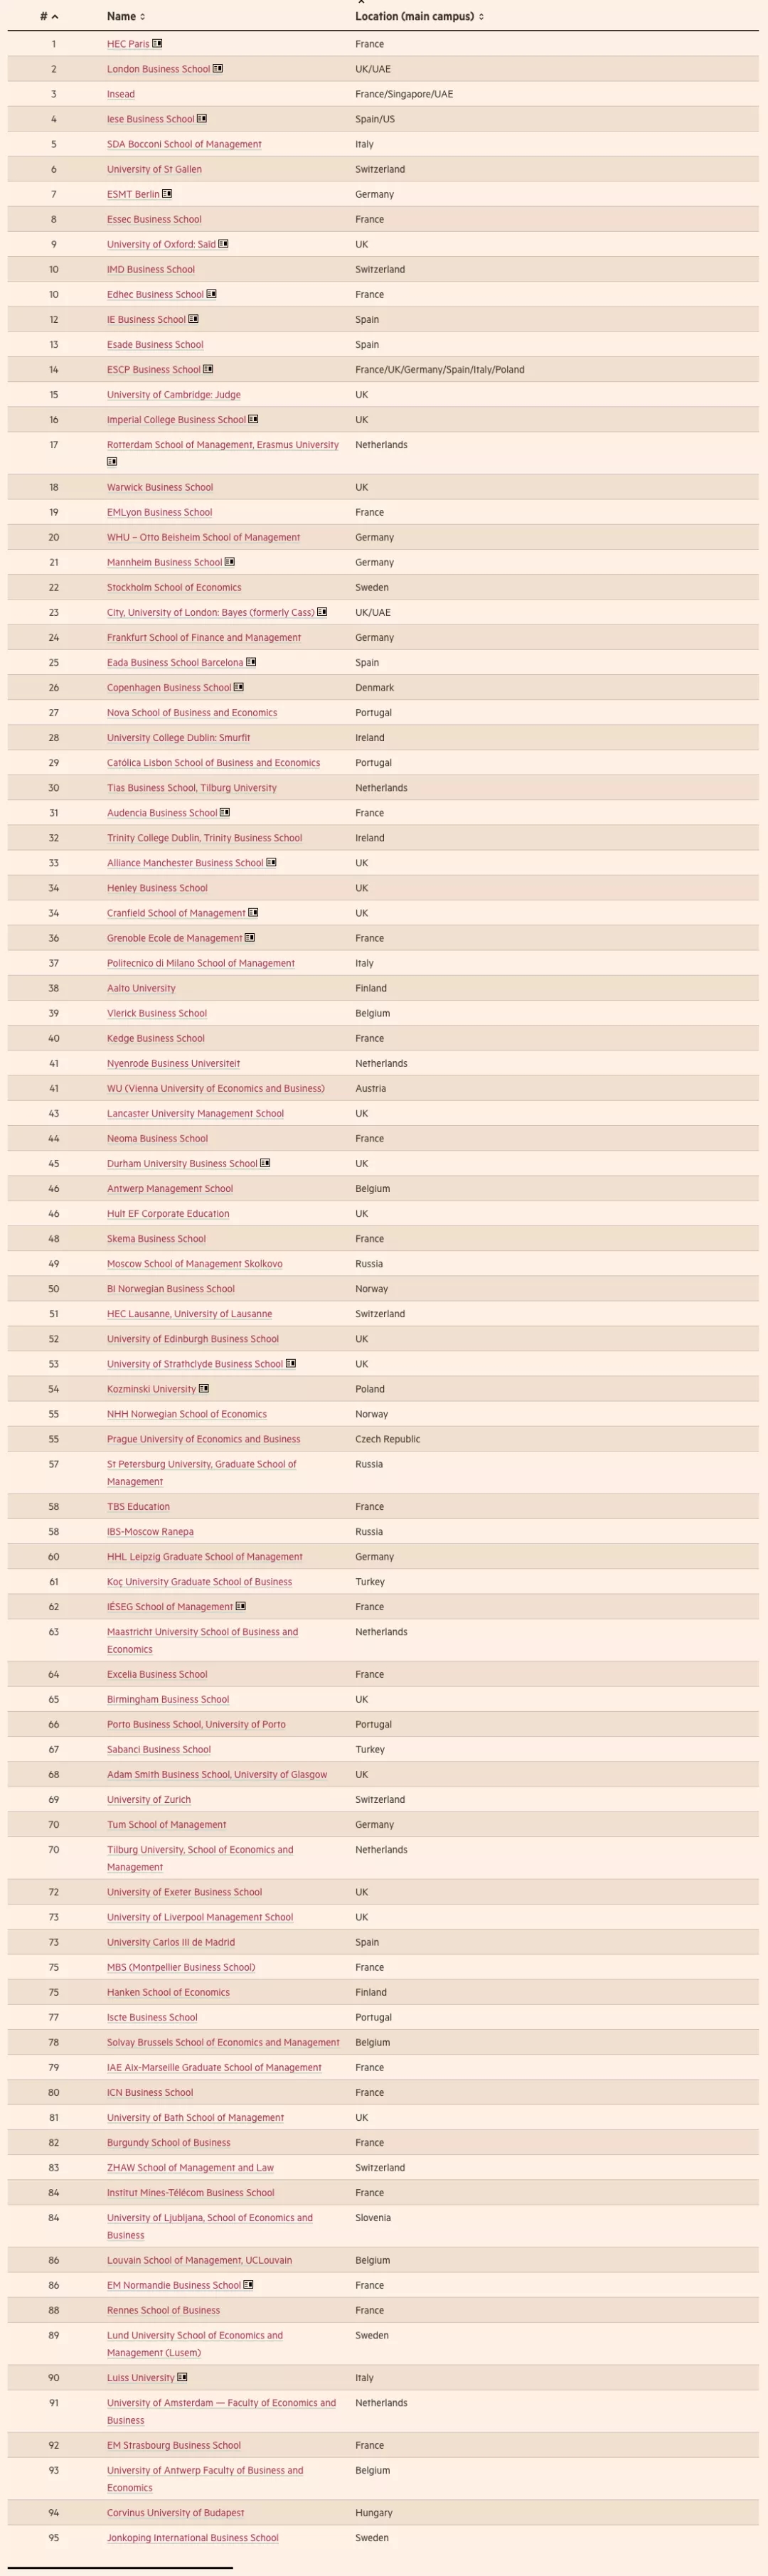 2021《金融时报》欧洲商学院排名.webp.jpg